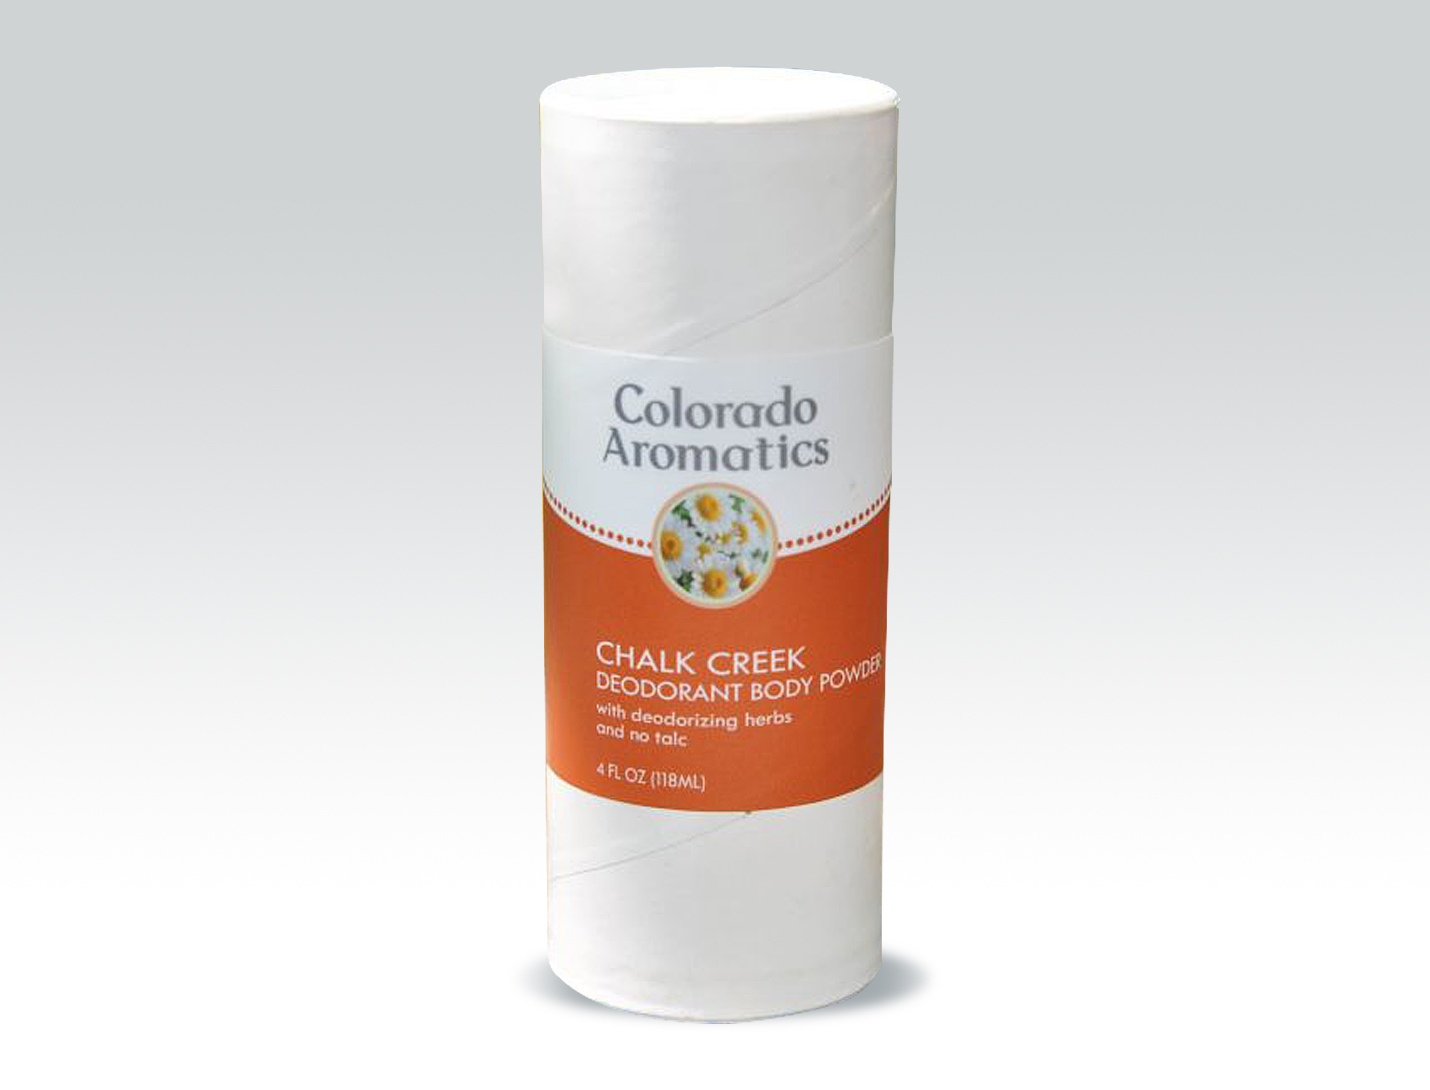 Colorado Aromatics natural deodorant